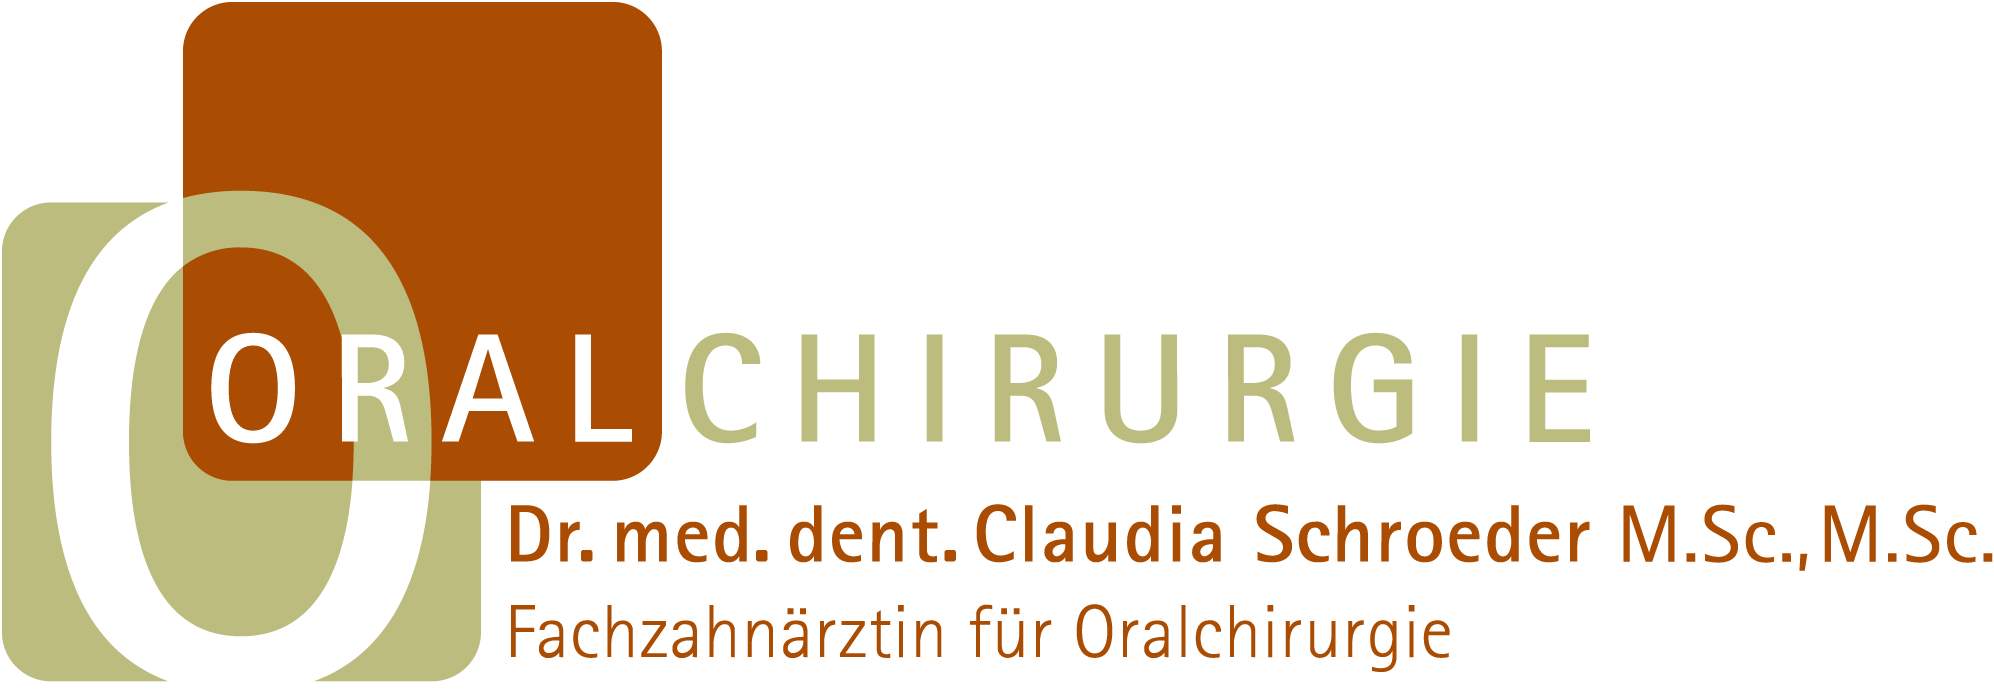 CMD Selbsttest Schroeder Logo